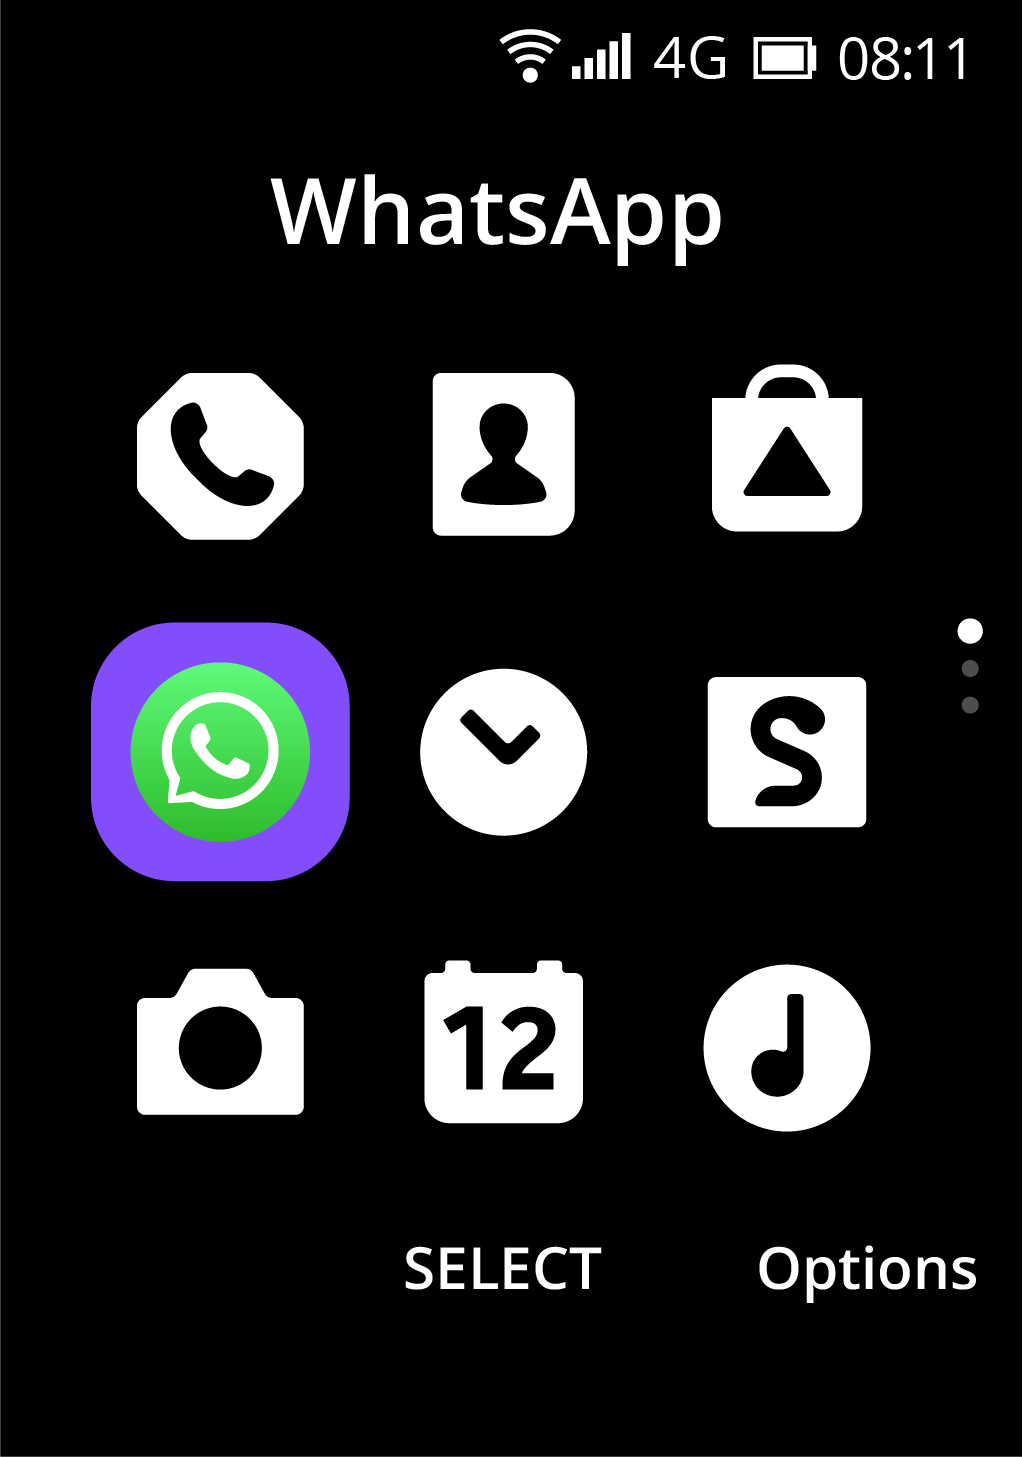 Whatsapp chính thức có mặt trên Nokia 8110